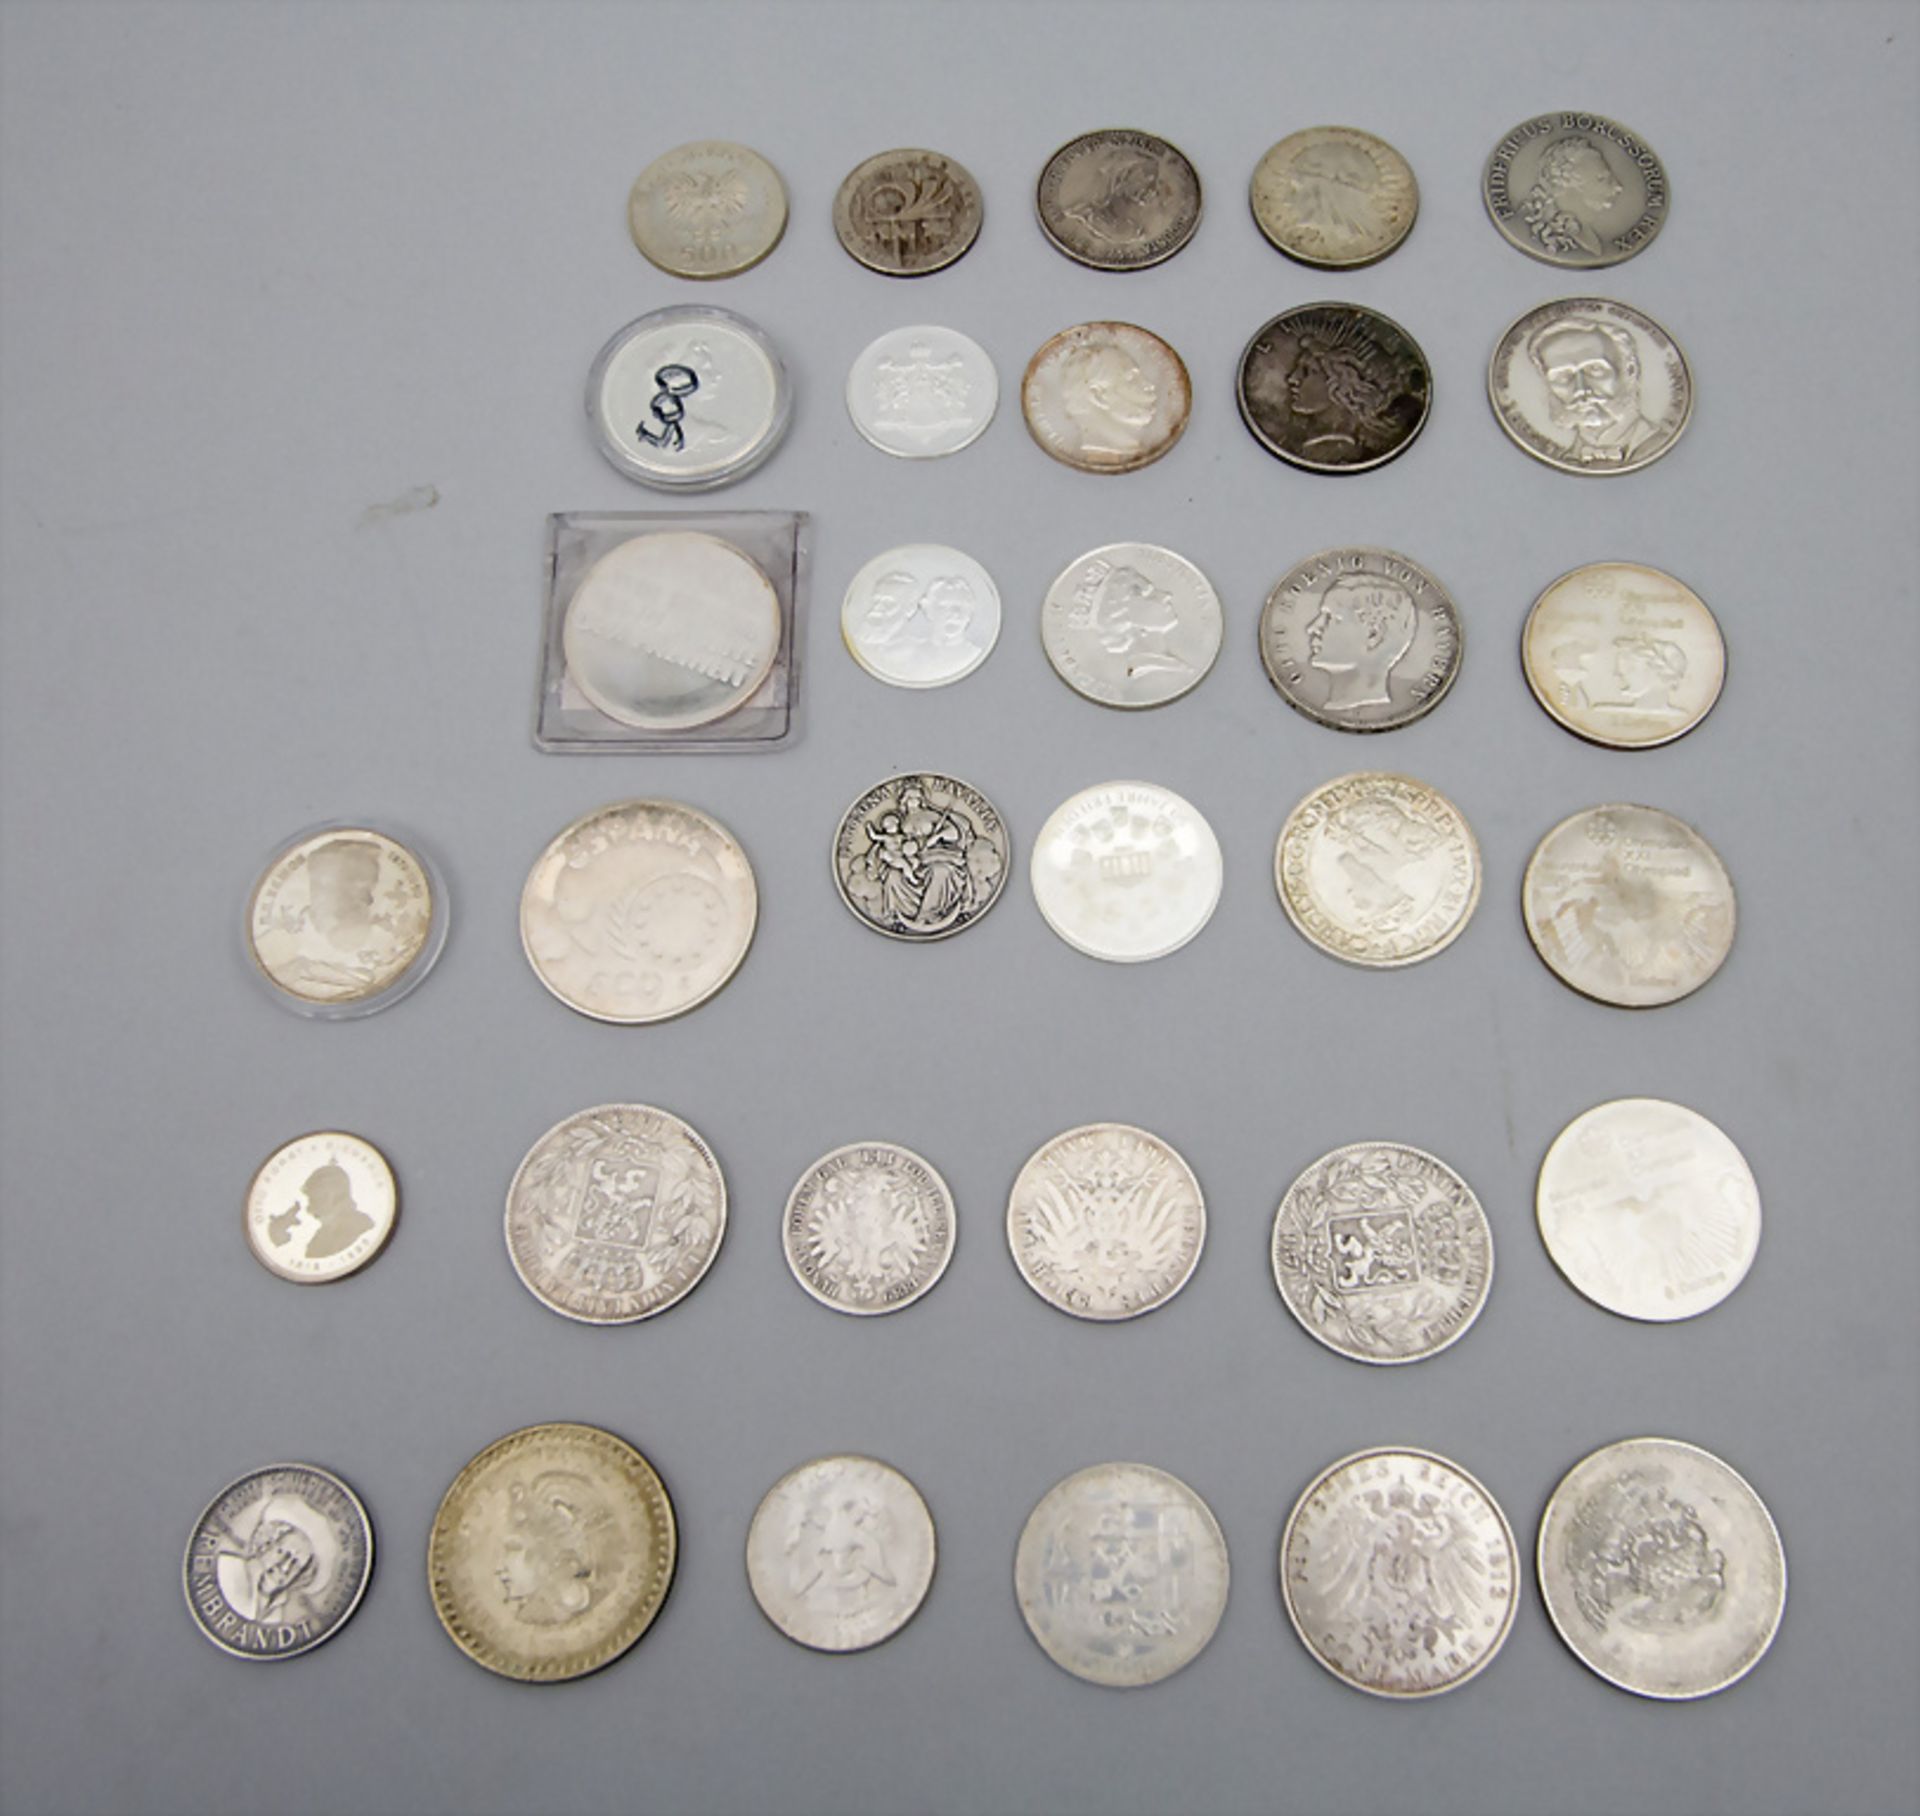 Sammlung Münzen und Medaillen aus Silber